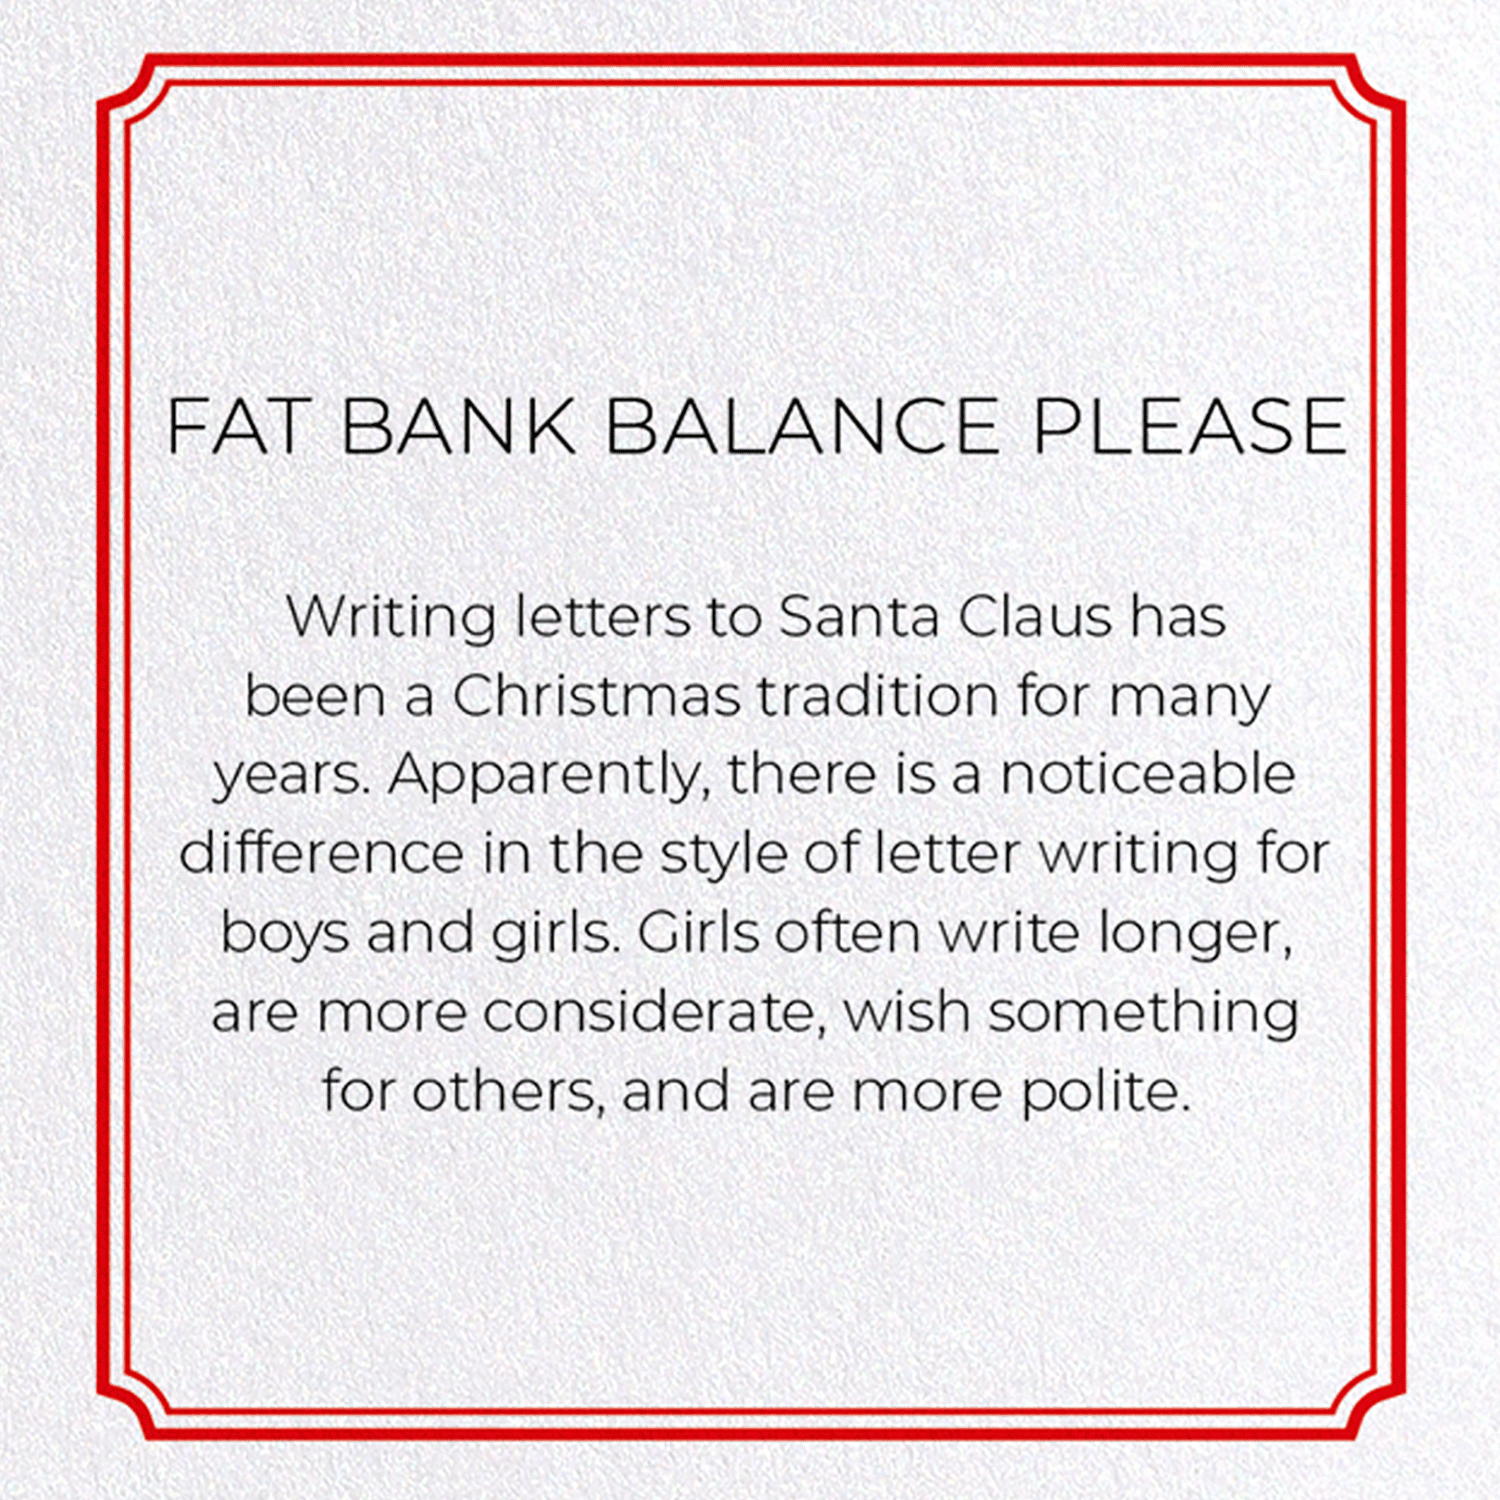 FAT BANK BALANCE PLEASE